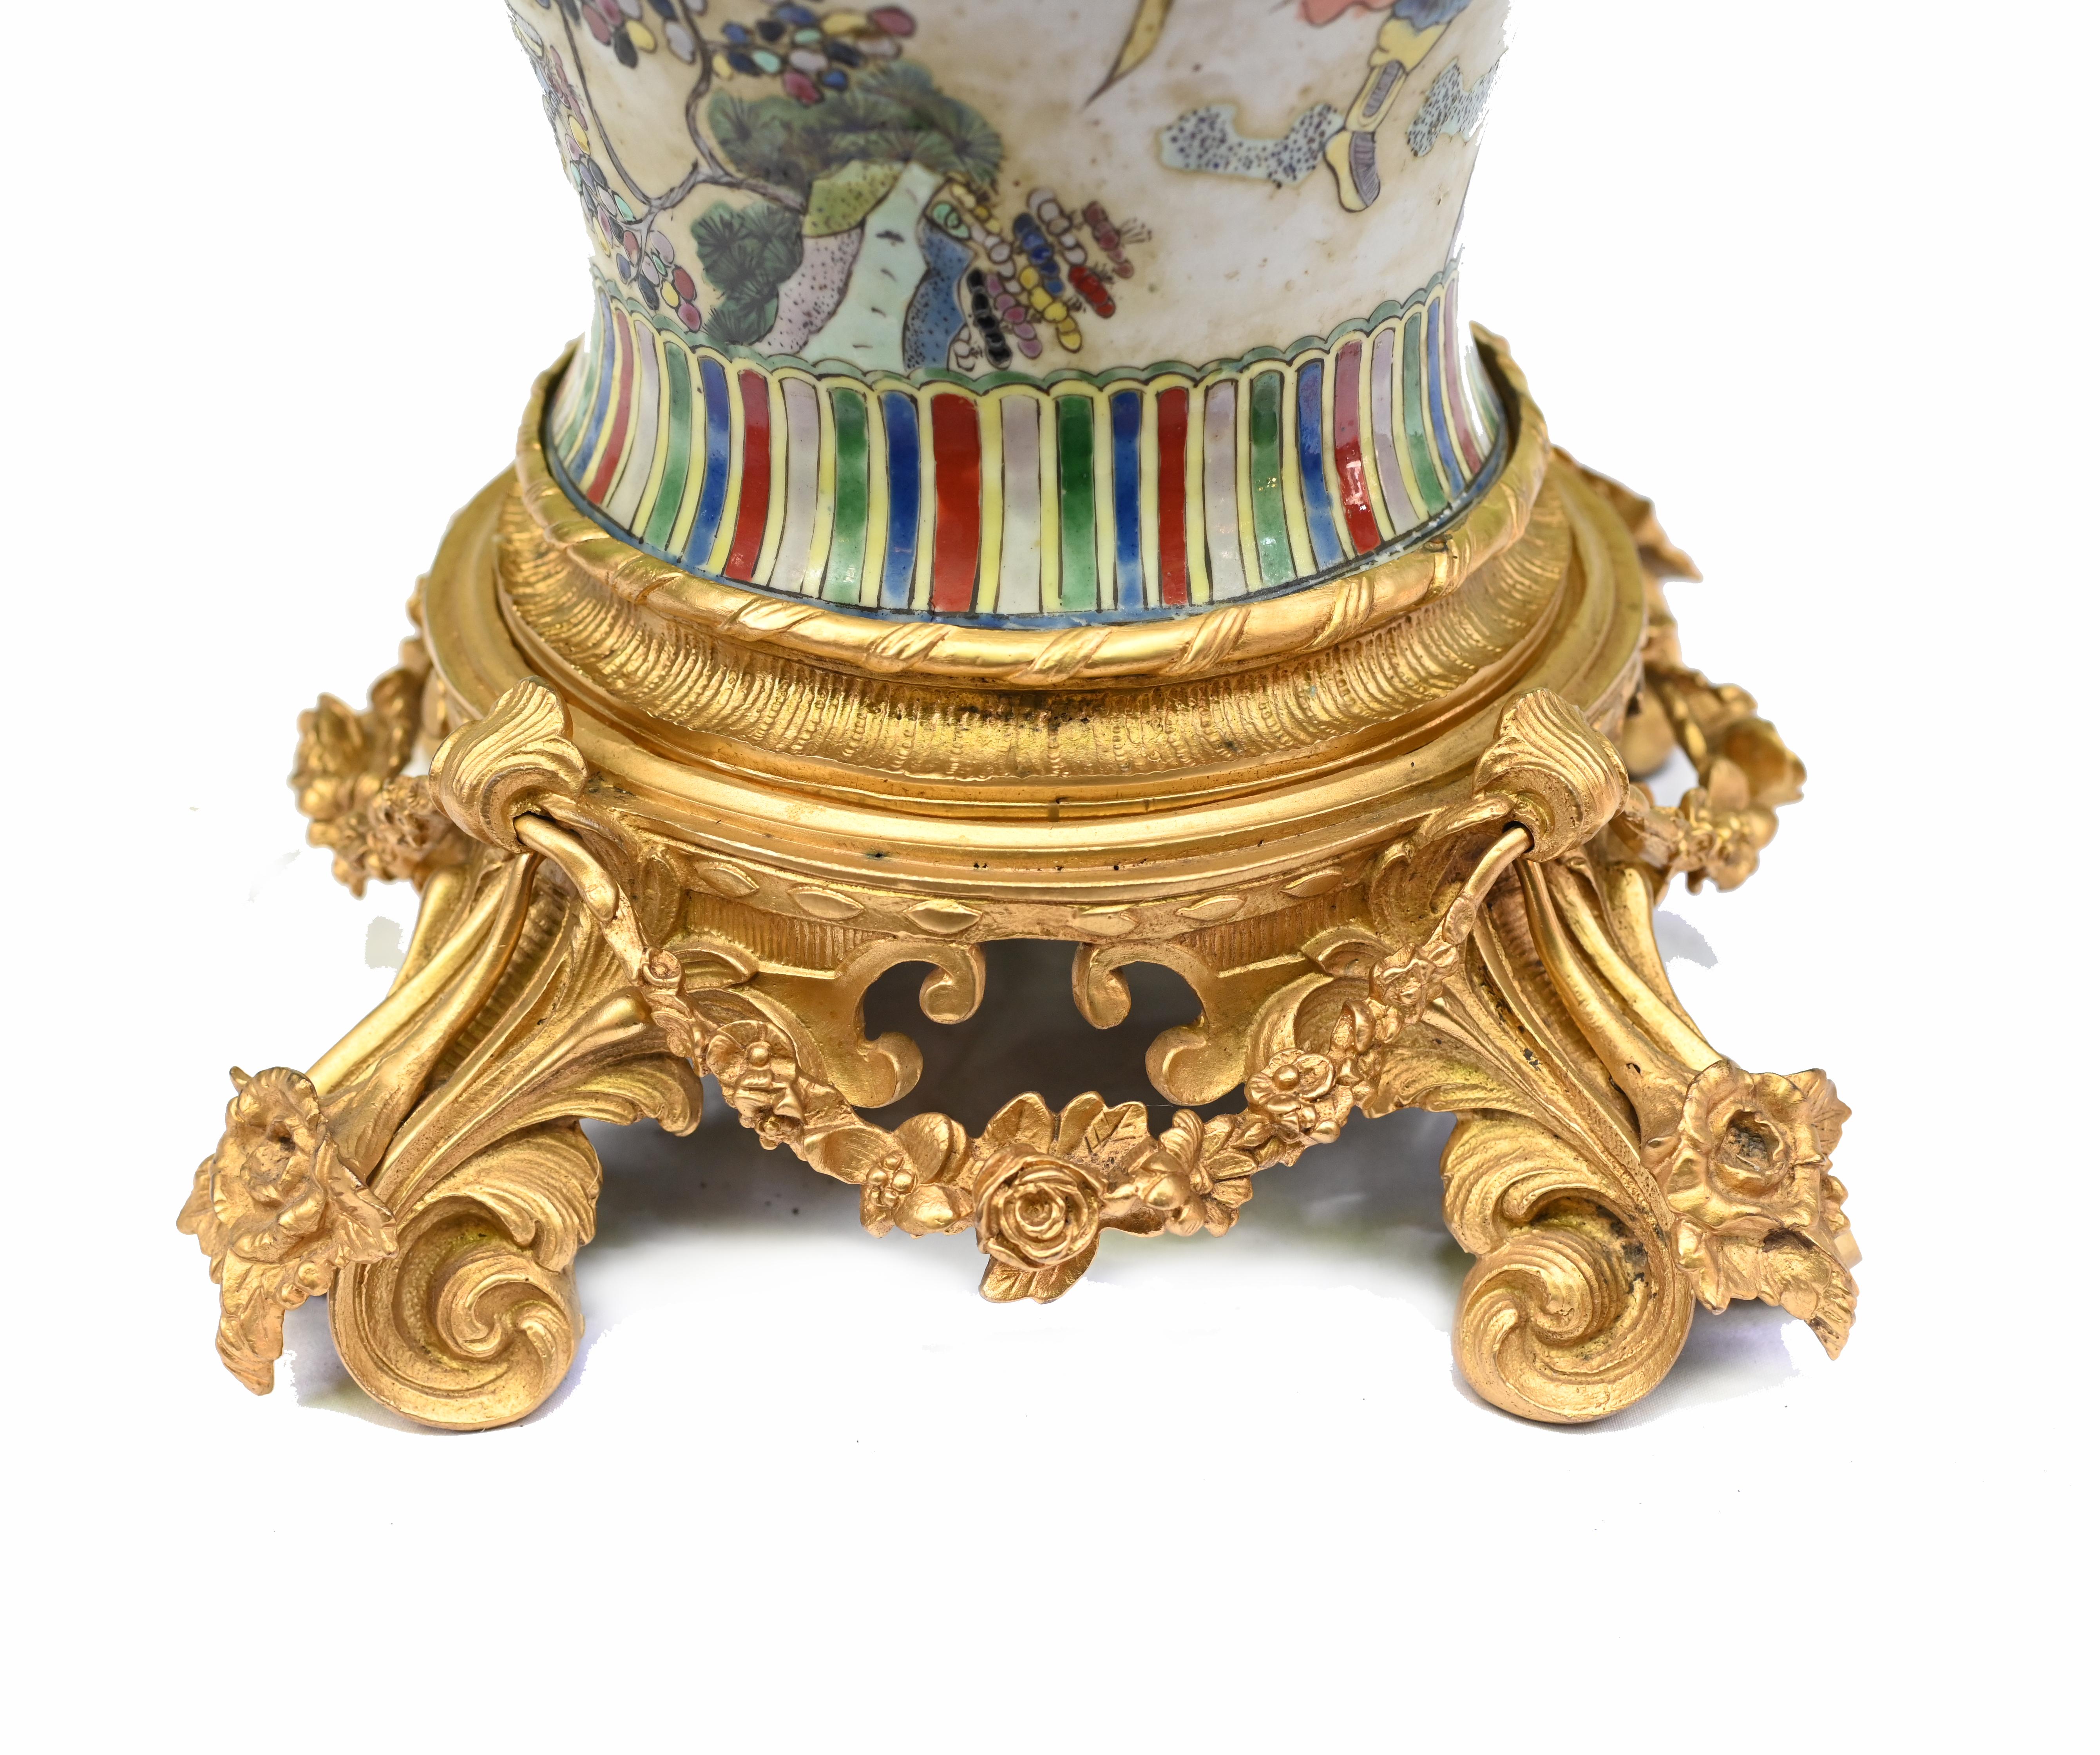 Elegante einzelne chinesische Qianlong-Porzellanvasen mit französischen Ormolu-Beschlägen
Es war üblich, dass diese Vasen für den französischen und englischen Markt mit Ormolu-Fassungen angepasst wurden.
Das Ormolu ist sehr gut gegossen und weist